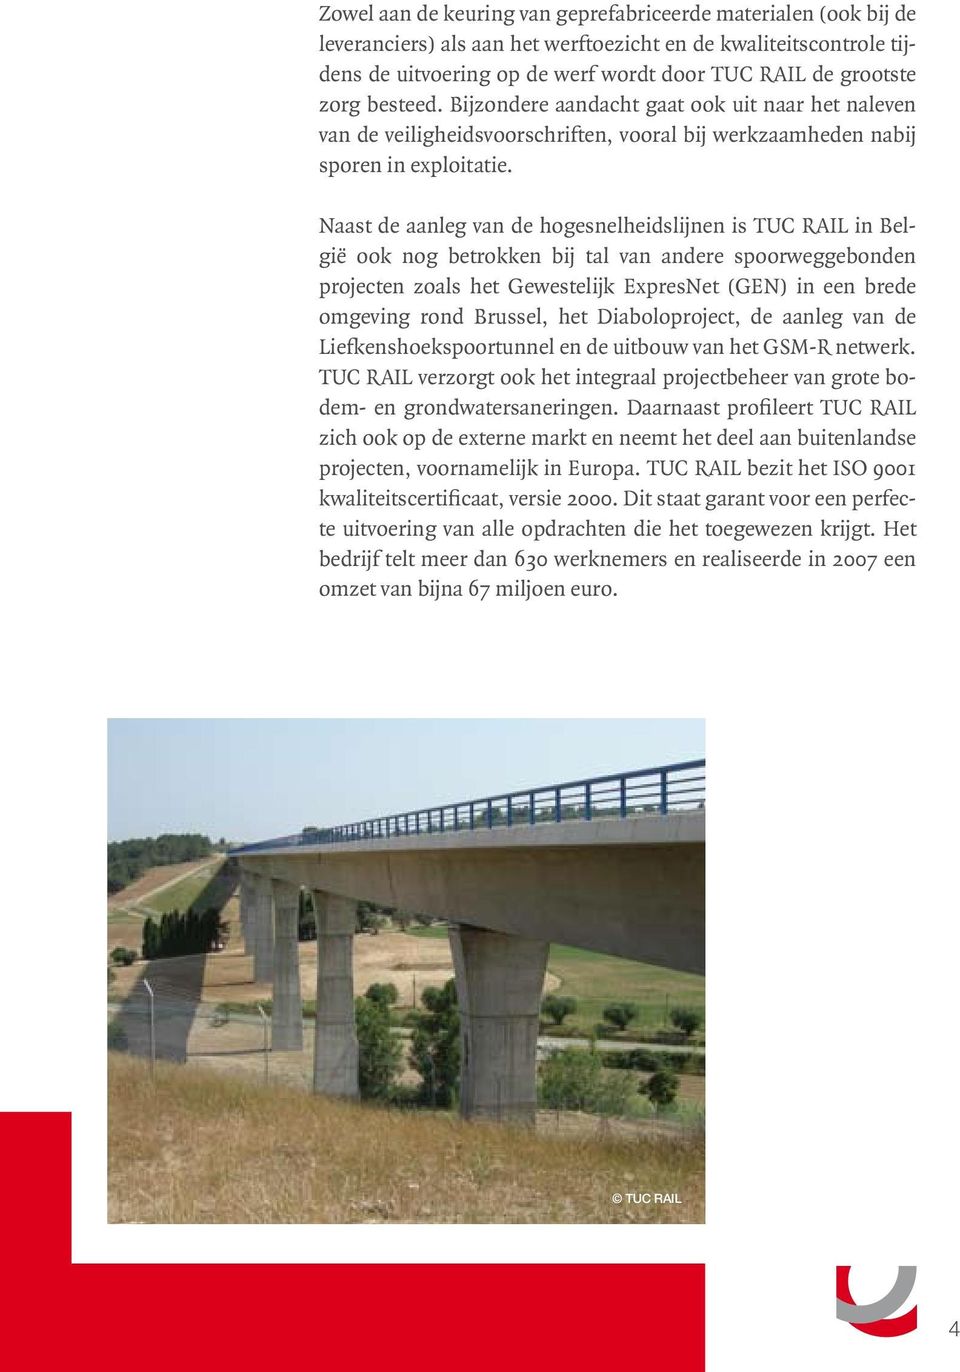 Naast de aanleg van de hogesnelheidslijnen is TUC RAIL in België ook nog betrokken bij tal van andere spoorweggebonden projecten zoals het Gewestelijk ExpresNet (GEN) in een brede omgeving rond